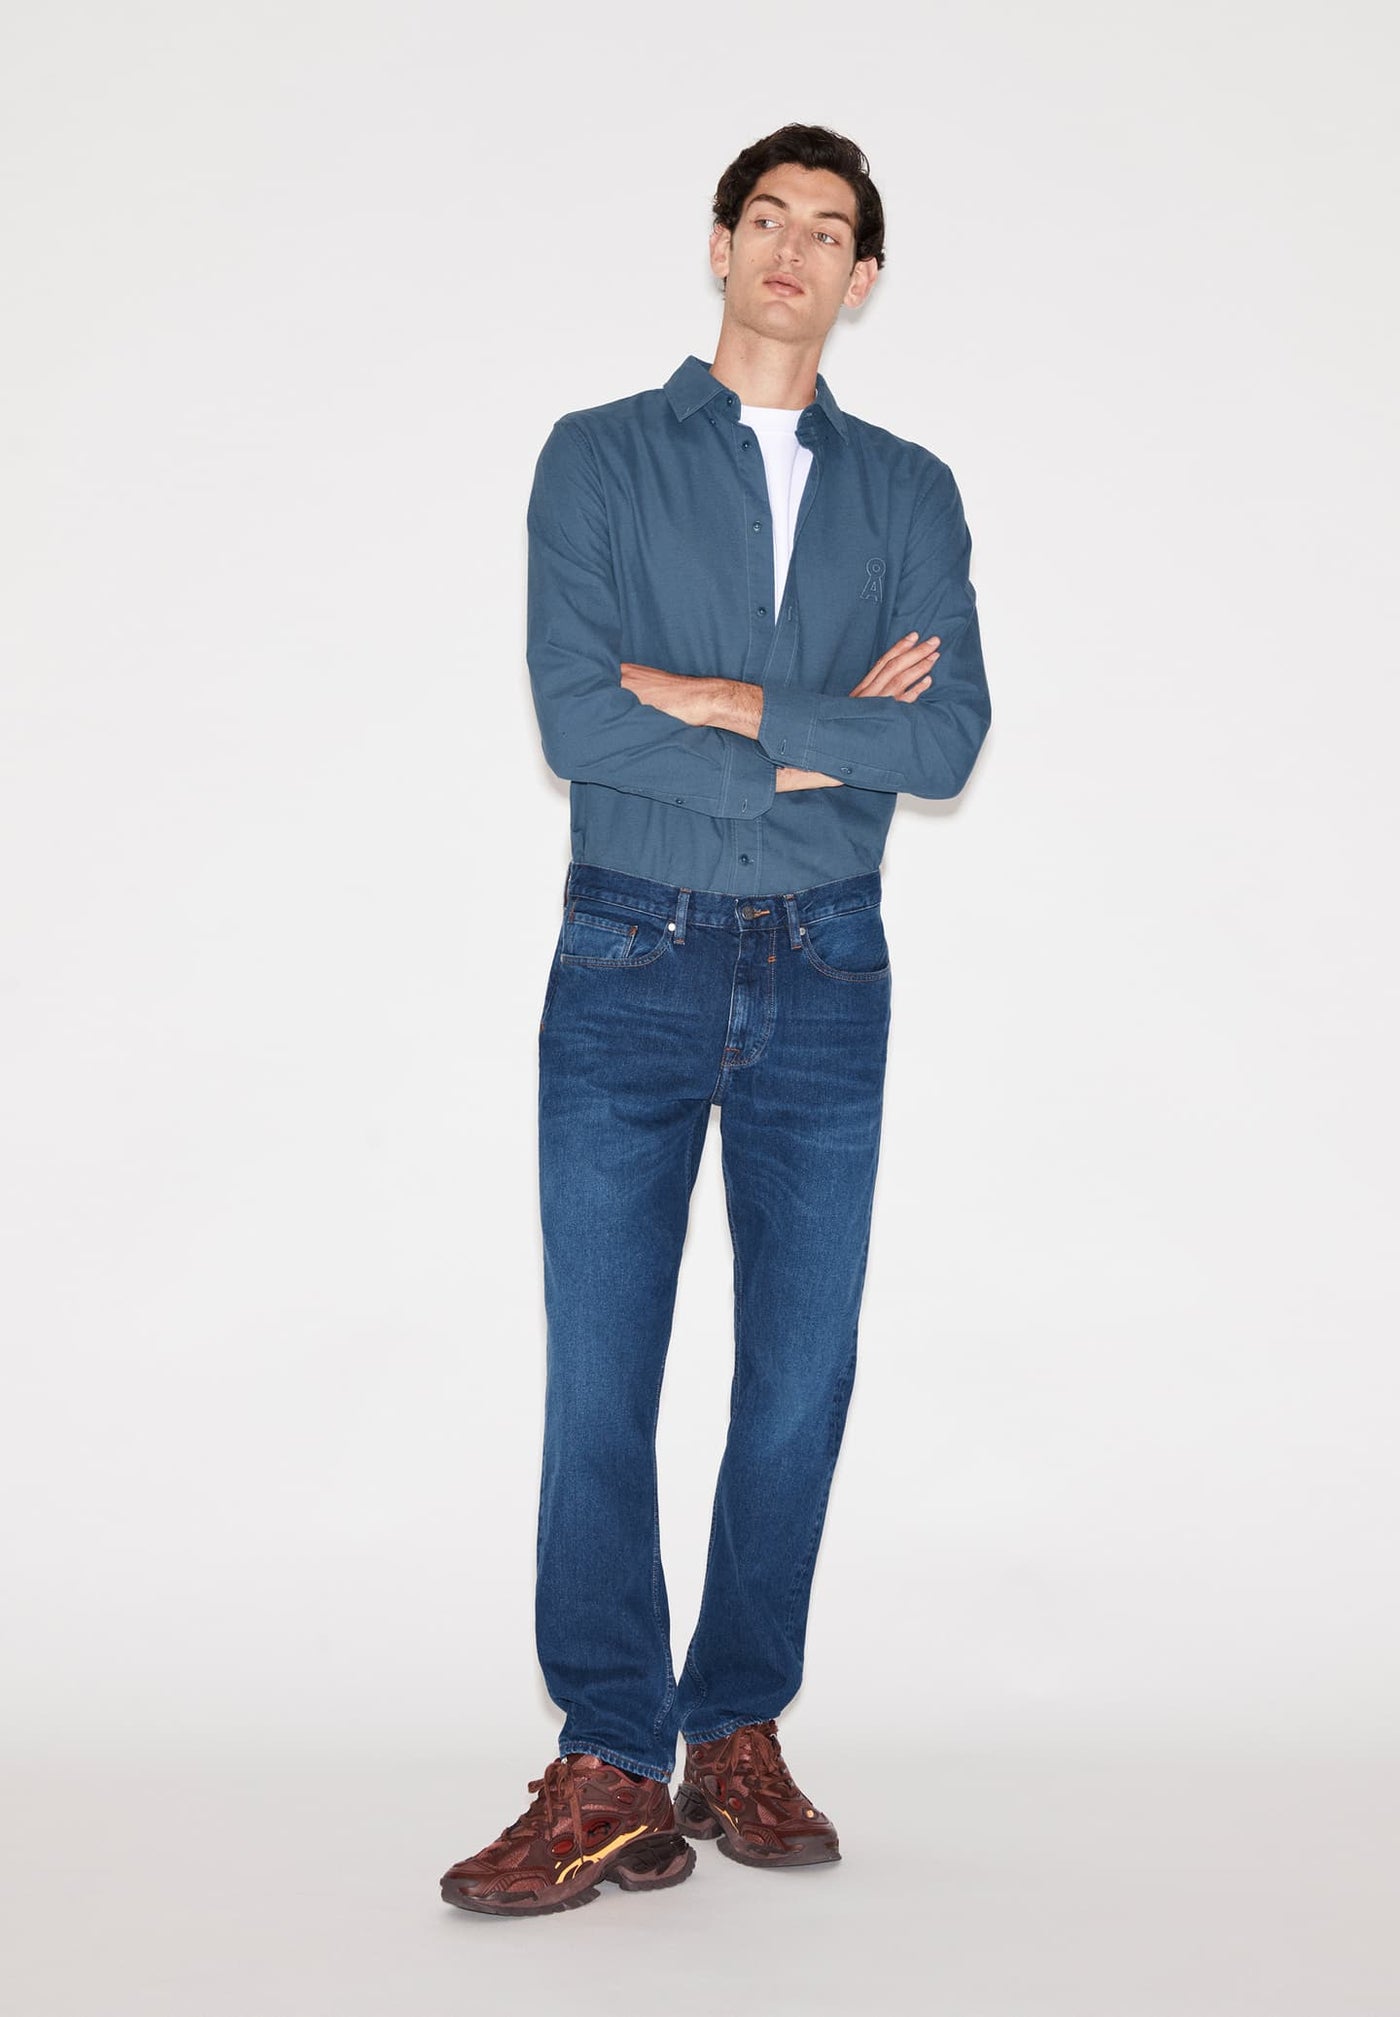 DYLAANO Herren Jeans 100 % rec. cotton